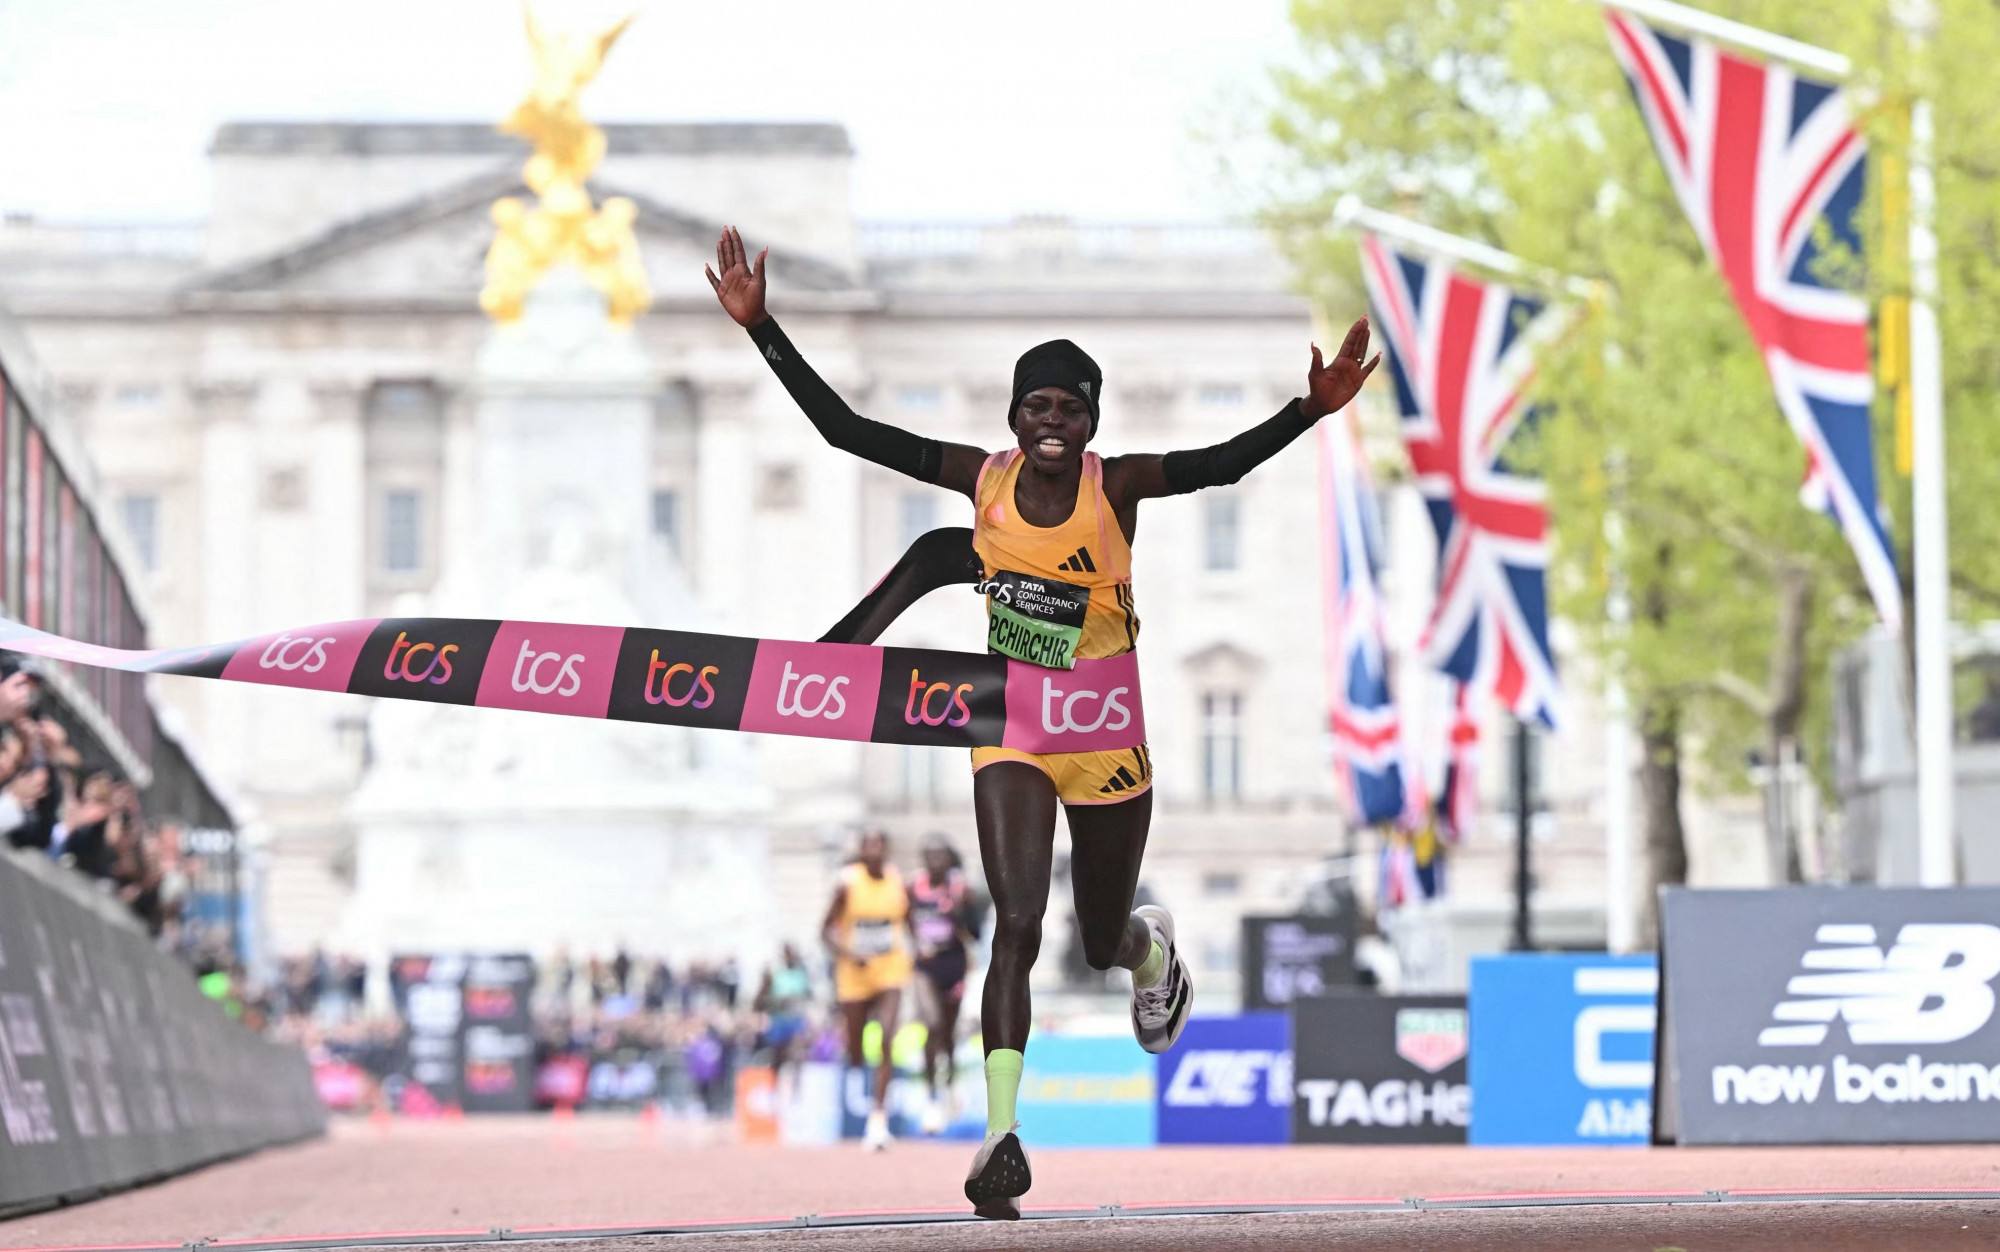 Megdőlt a női világrekord a londoni maratonon